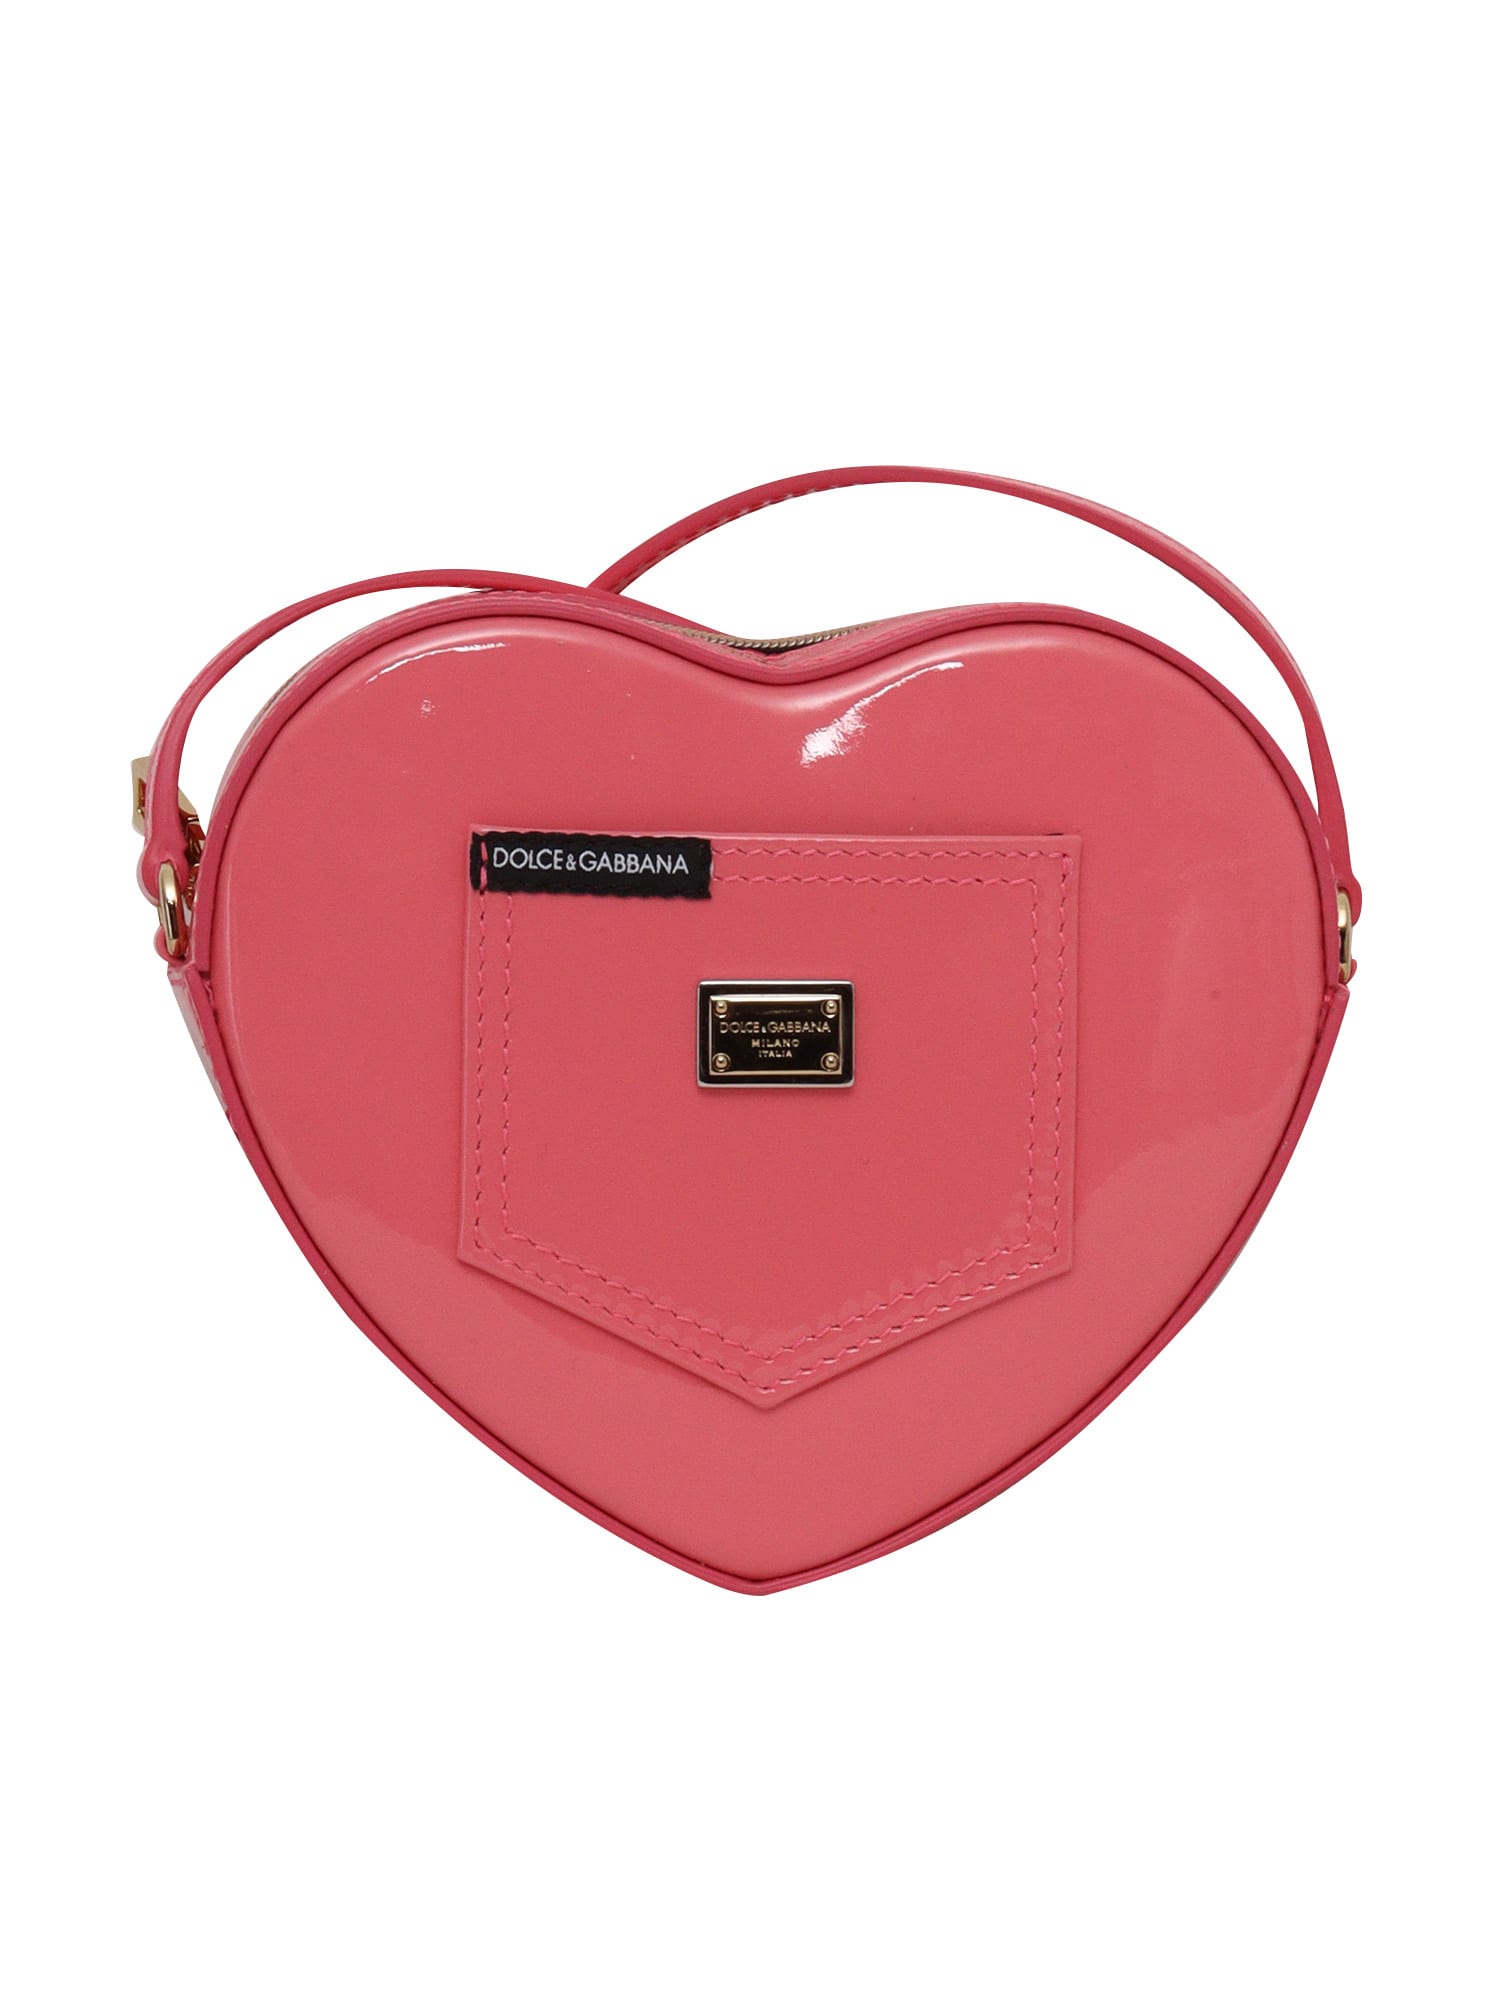 Dolce & Gabbana Heart Shaped Bag